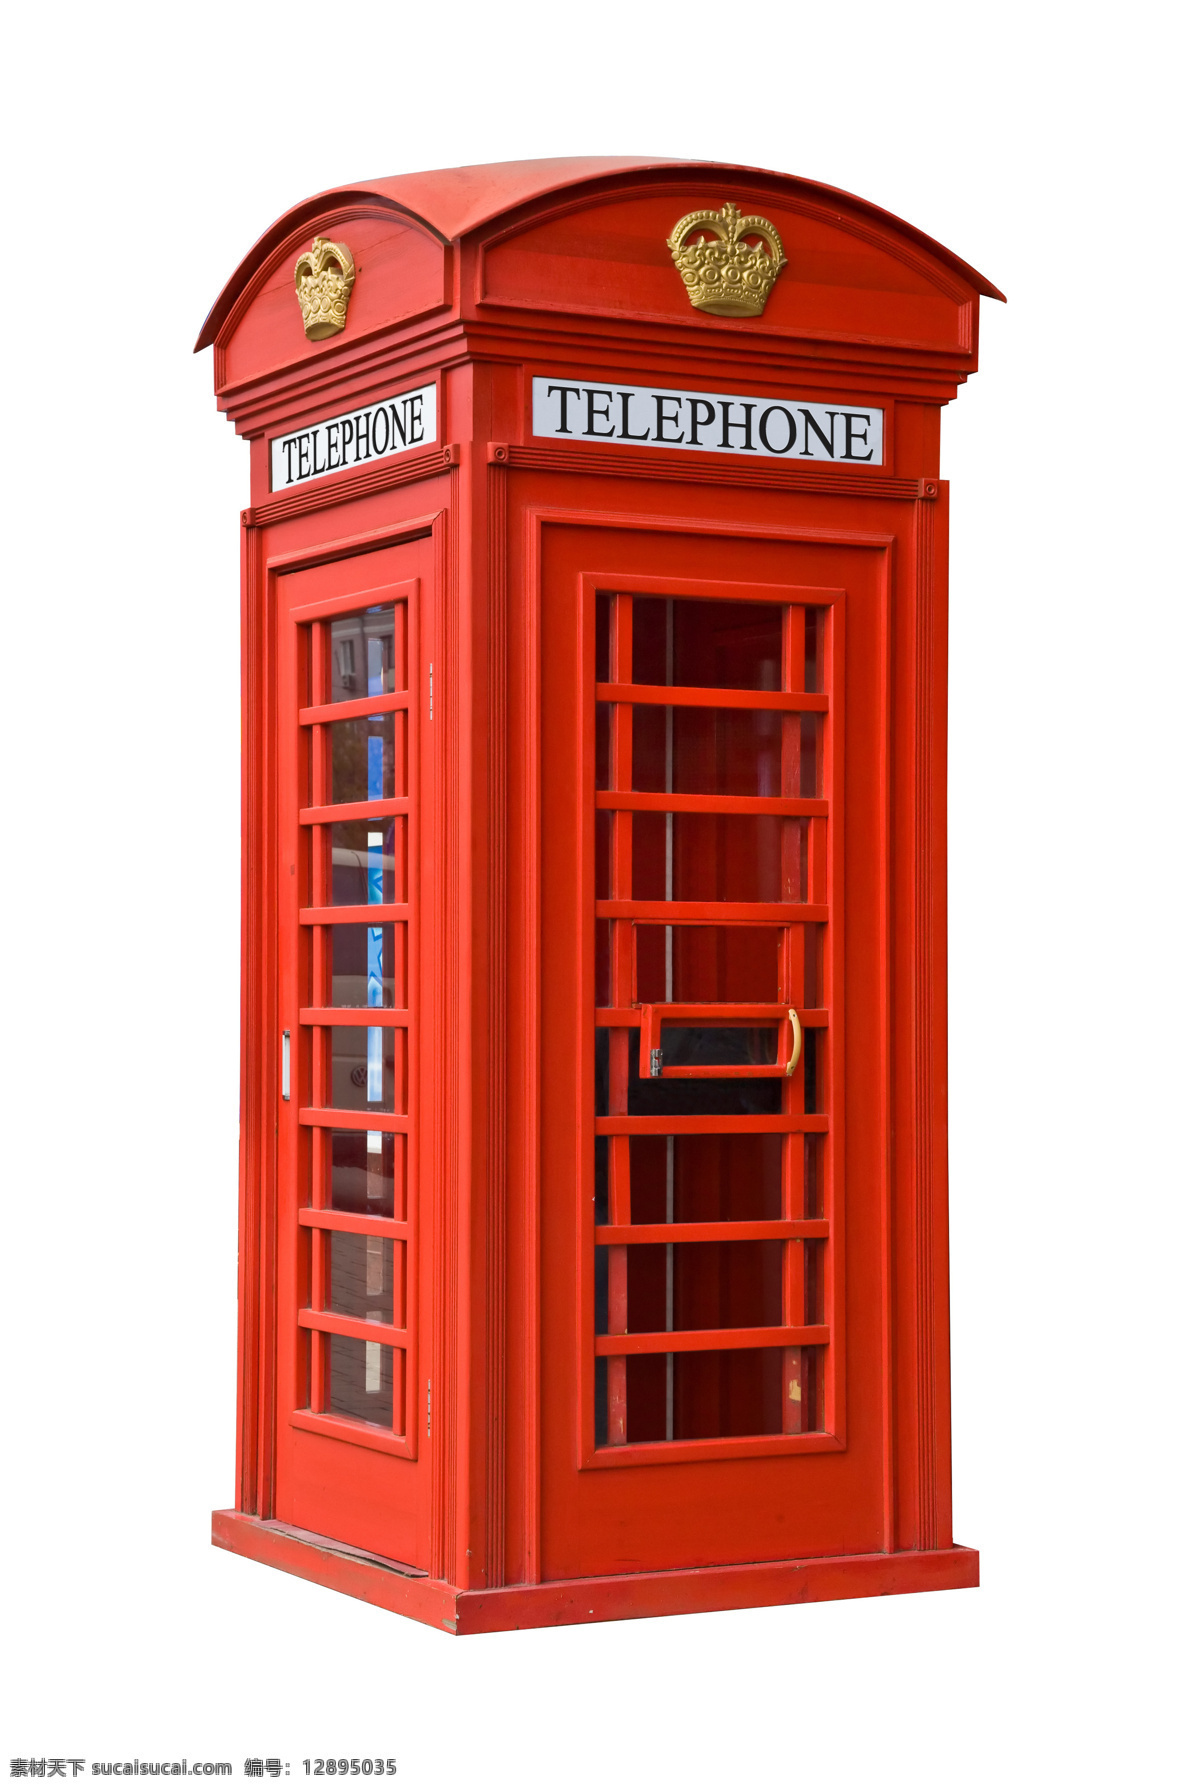 红色 电话亭 欧美经典 伦敦 欧美风格 英国主题 英国元素 英国特色图片 红色电话亭 城市风光 环境家居